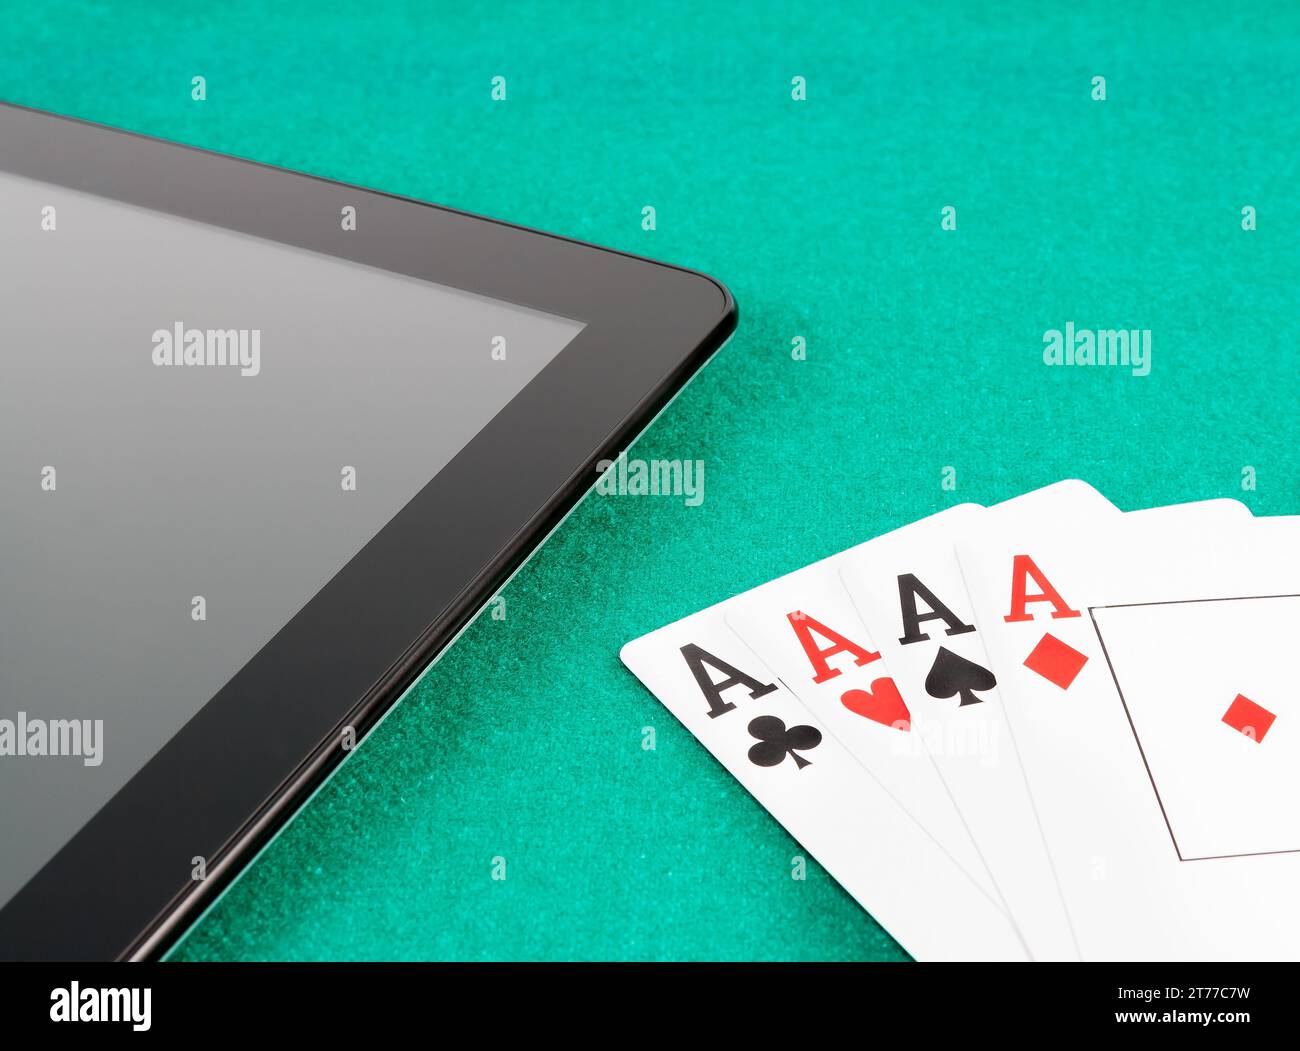 Pokerkarten in der Nähe eines digitalen Tablet-pcs auf grünem Spieltisch, Konzept des Poker online Stockfoto